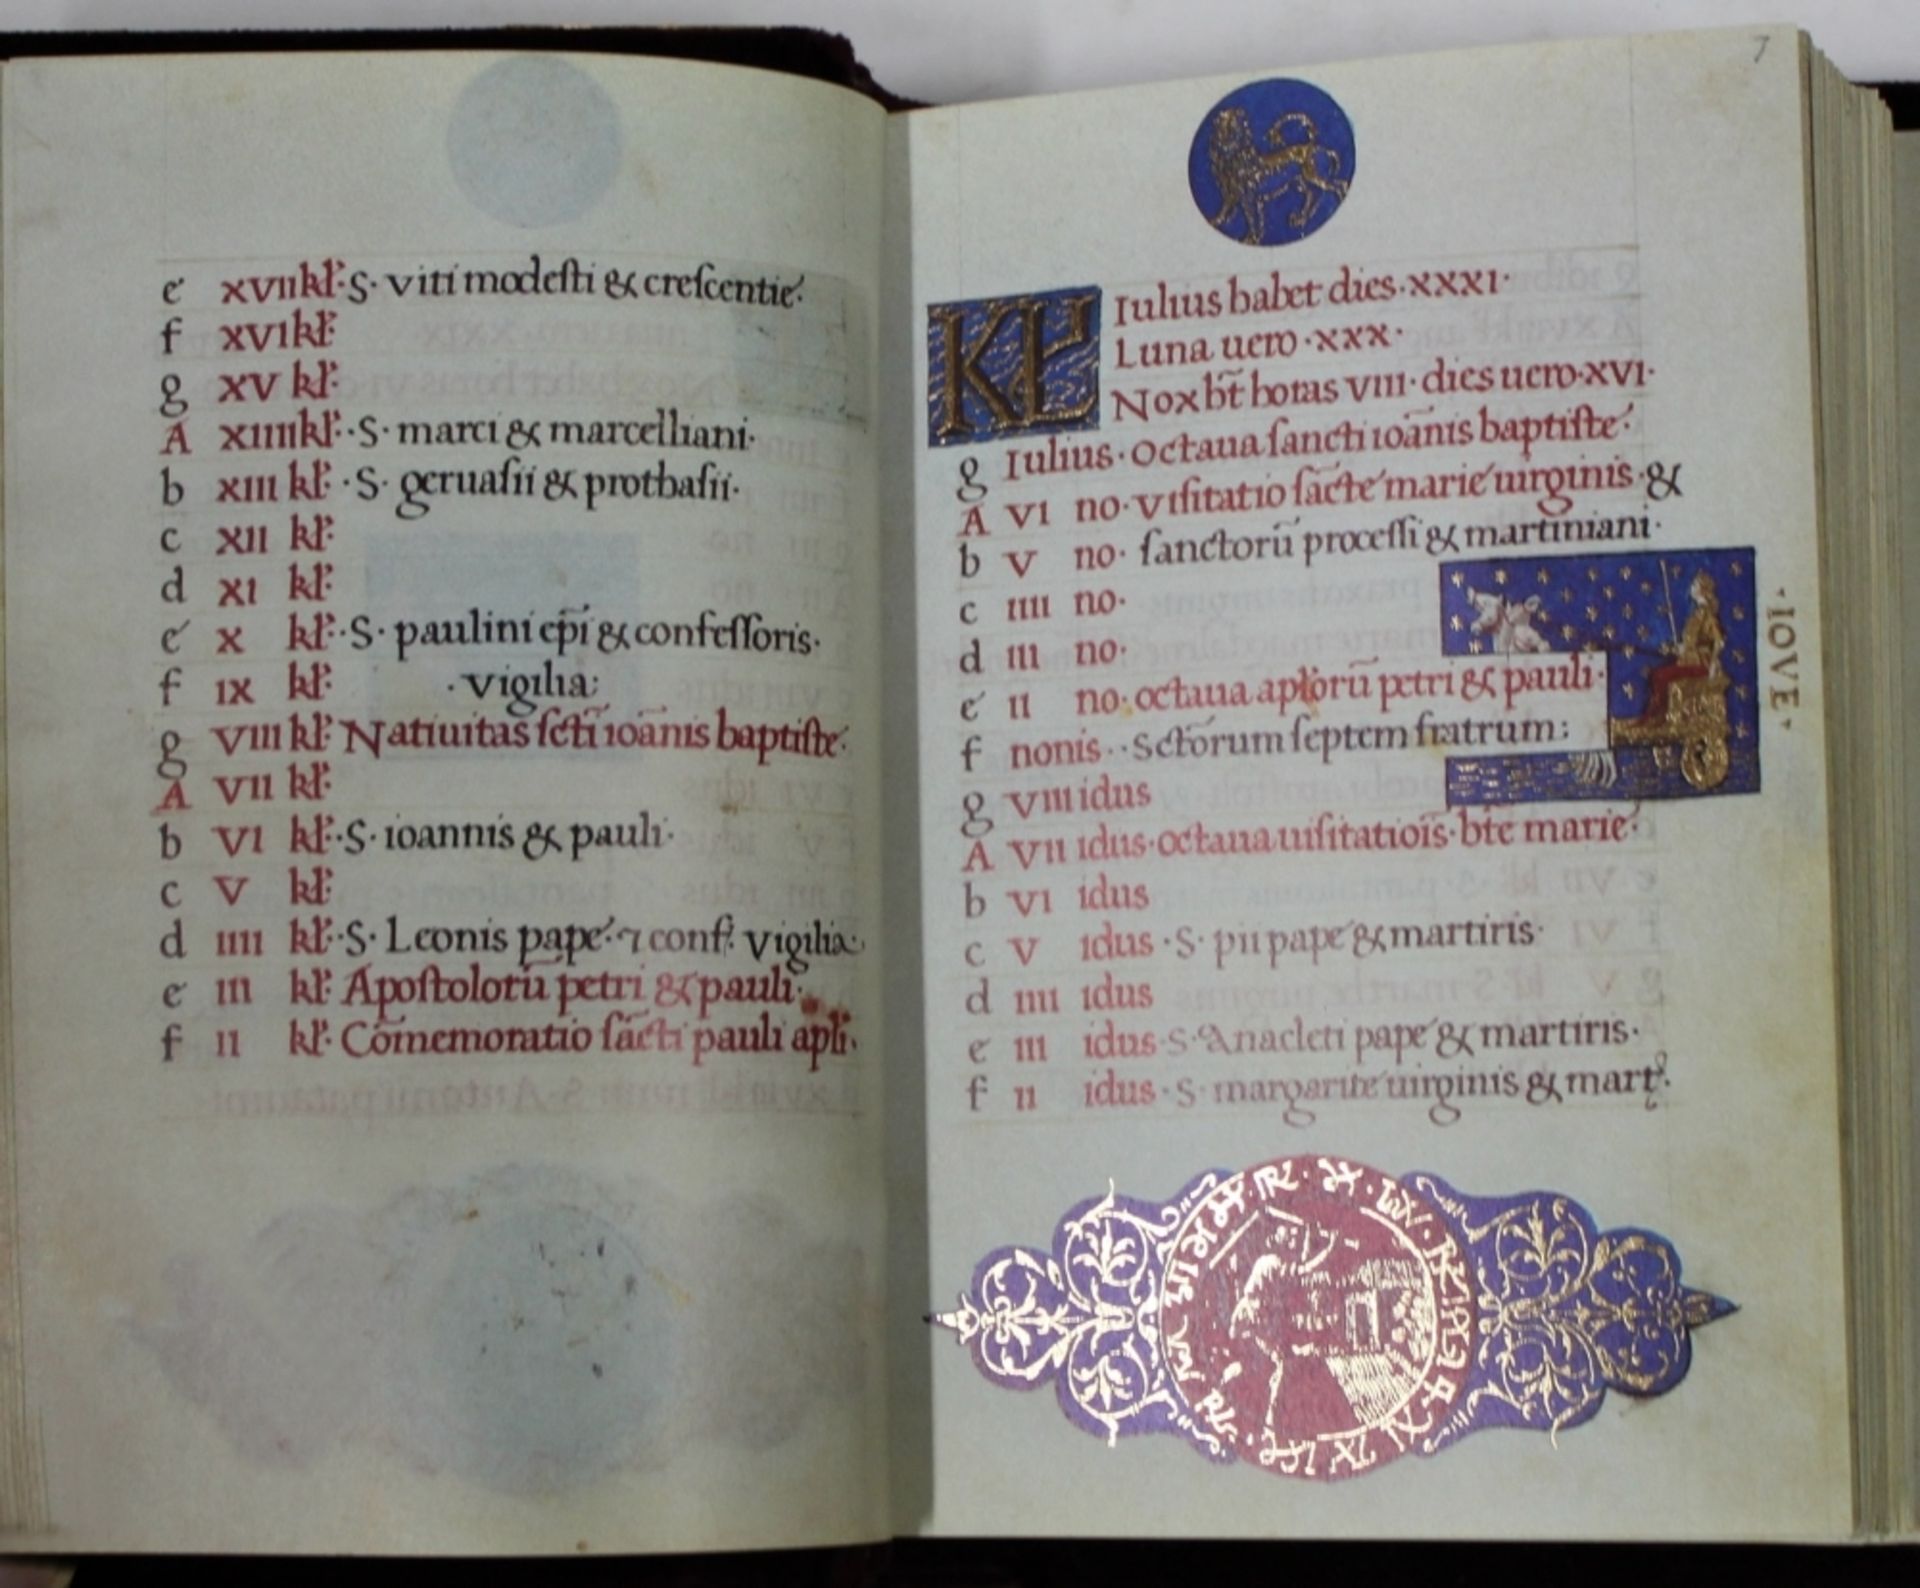 Mirandola - Stundenbuch. Faksimile der Handschrift MS. Add. 50002 der British Library London. / - Image 3 of 3